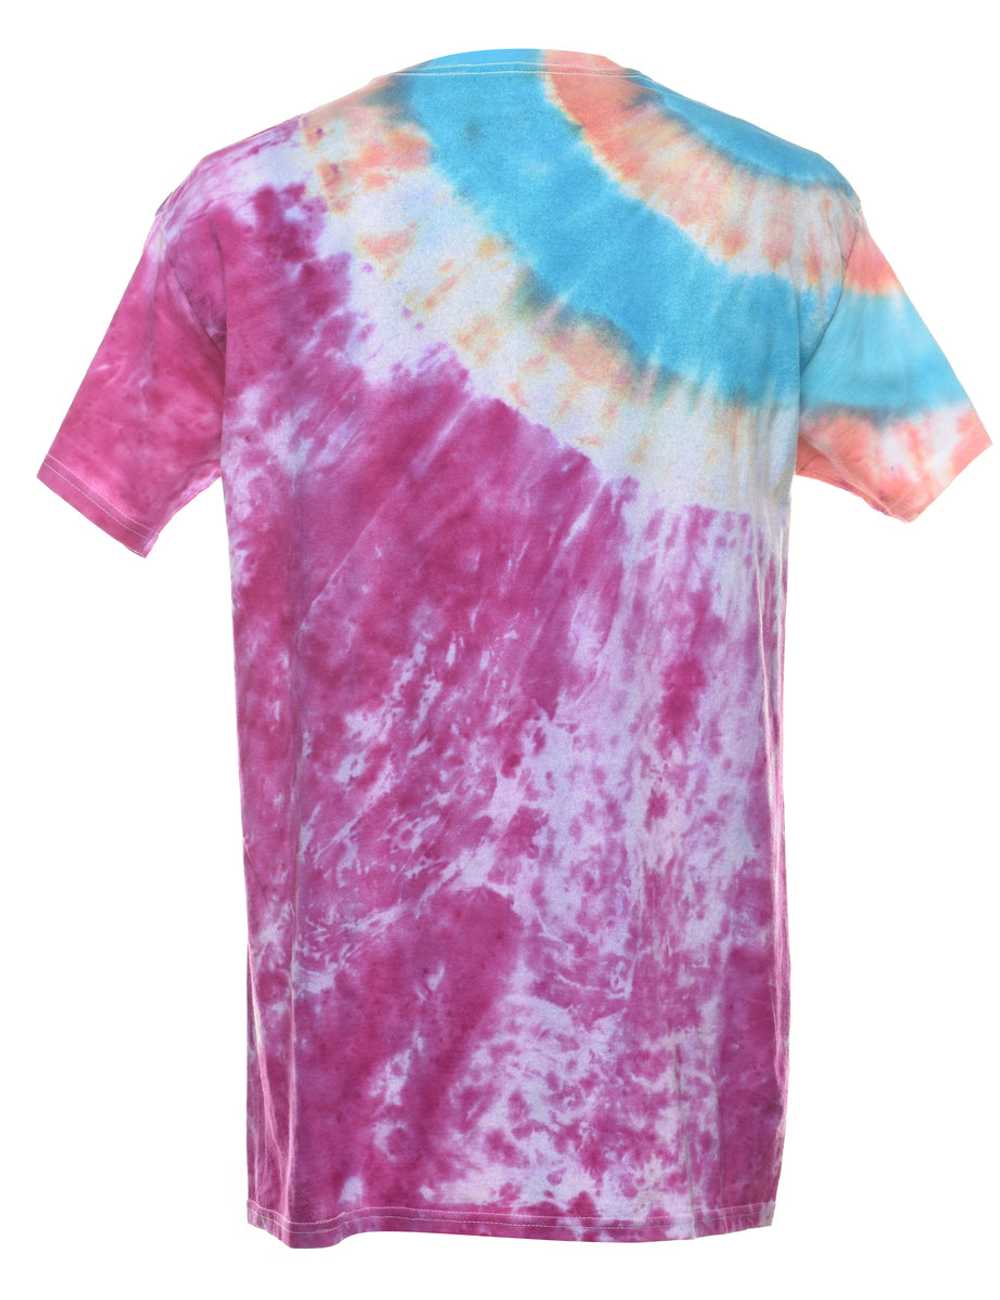 Multi-colour Tie Dye T-shirt - M - image 2